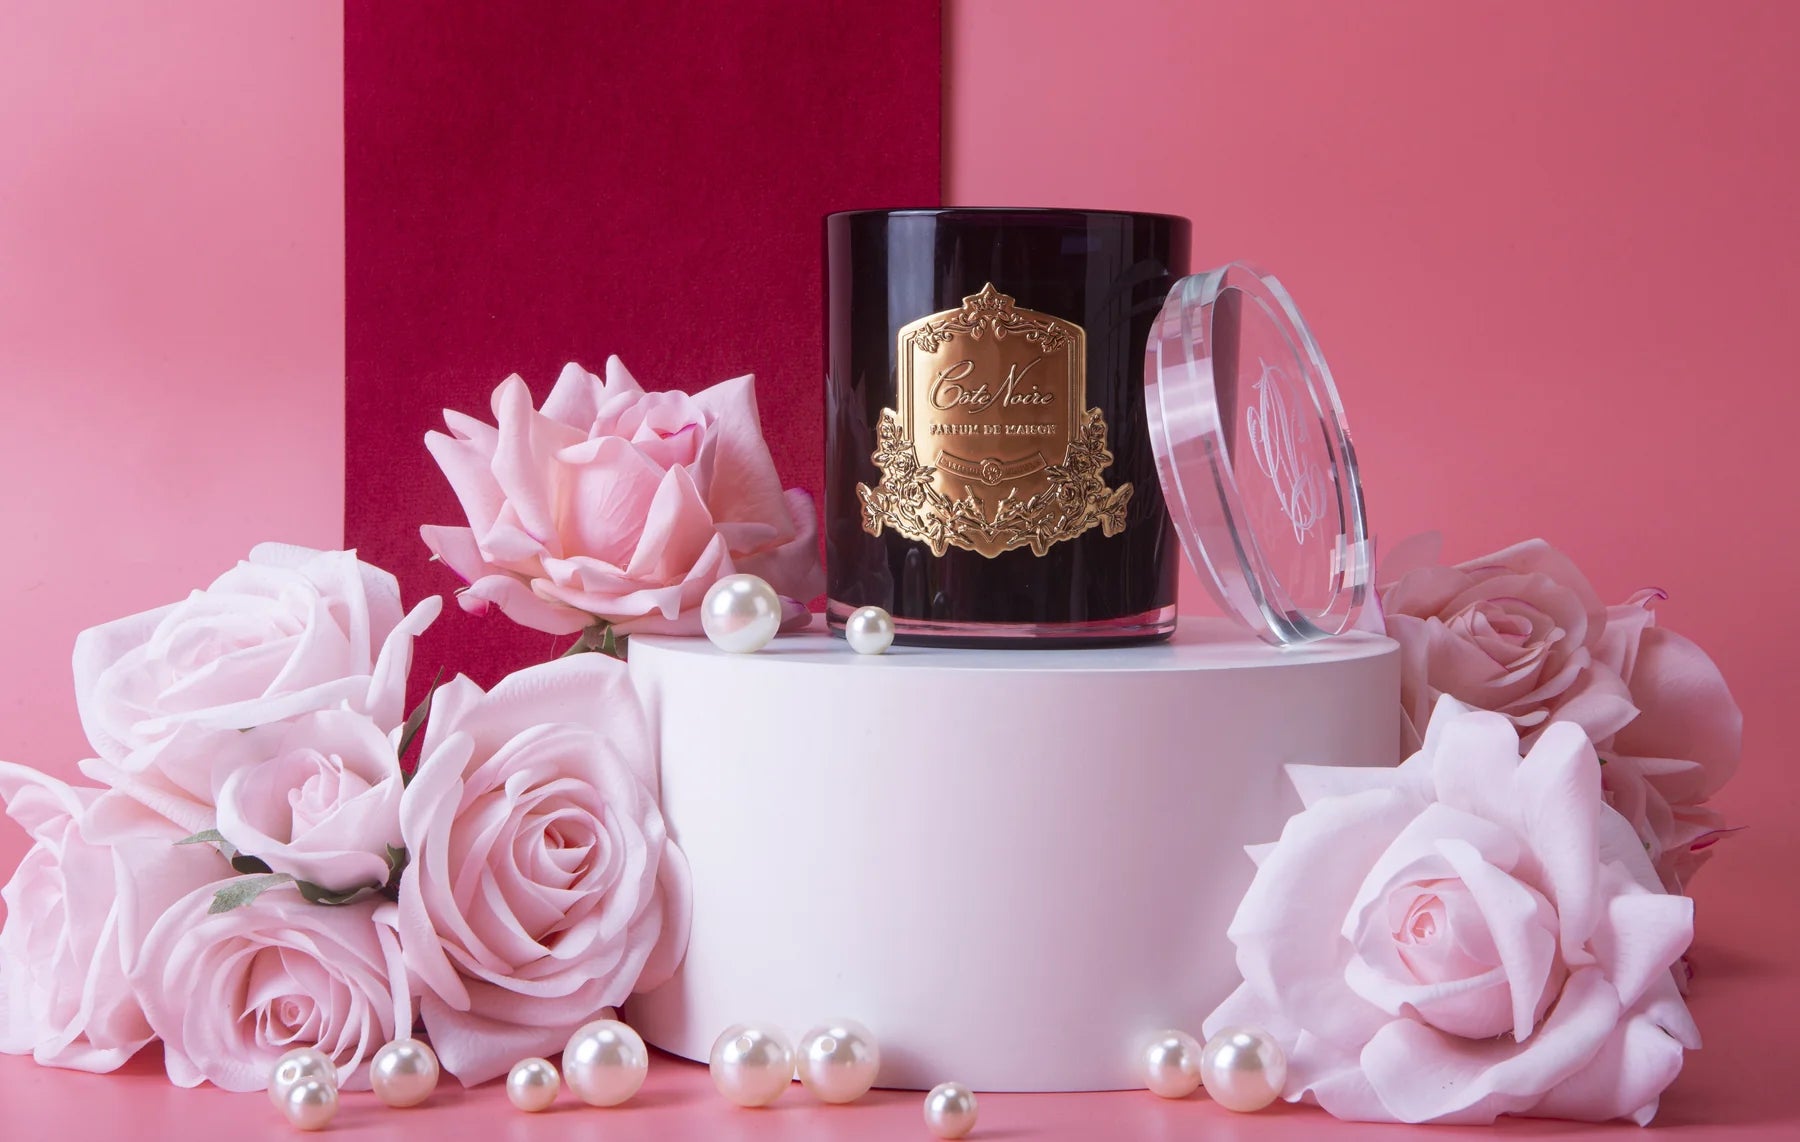 rose petal duftkerze in dunklem glas mit goldener inschrift auf pinkem podest, umgeben von pinken rosen. pinker hintergrund